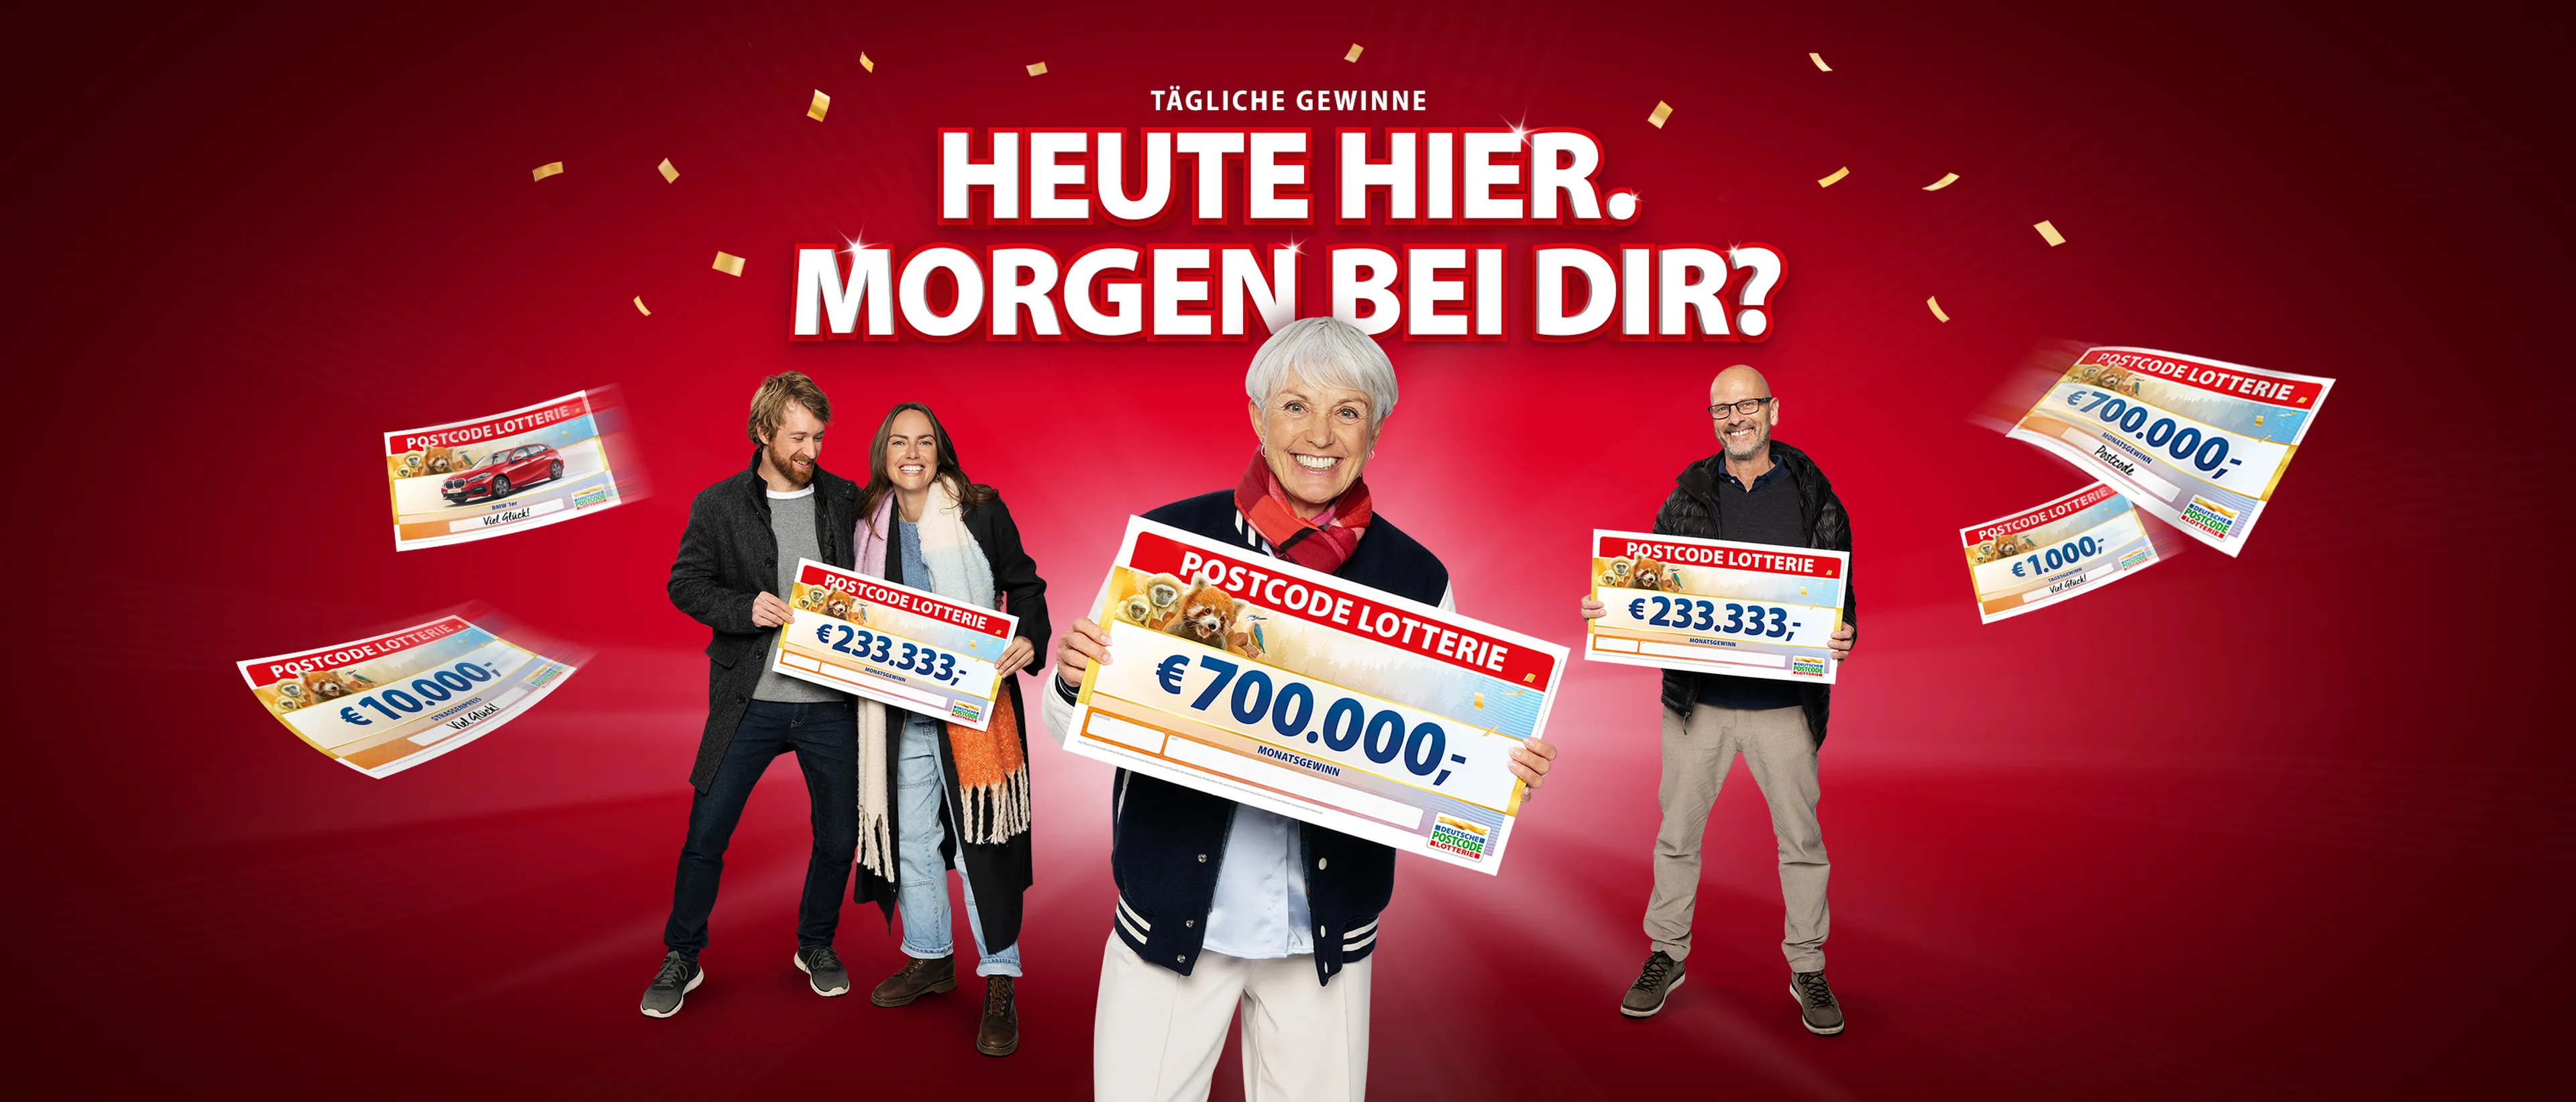 Bei der Deutschen Postcode Lotterie sind tägliche Gewinne garantiert